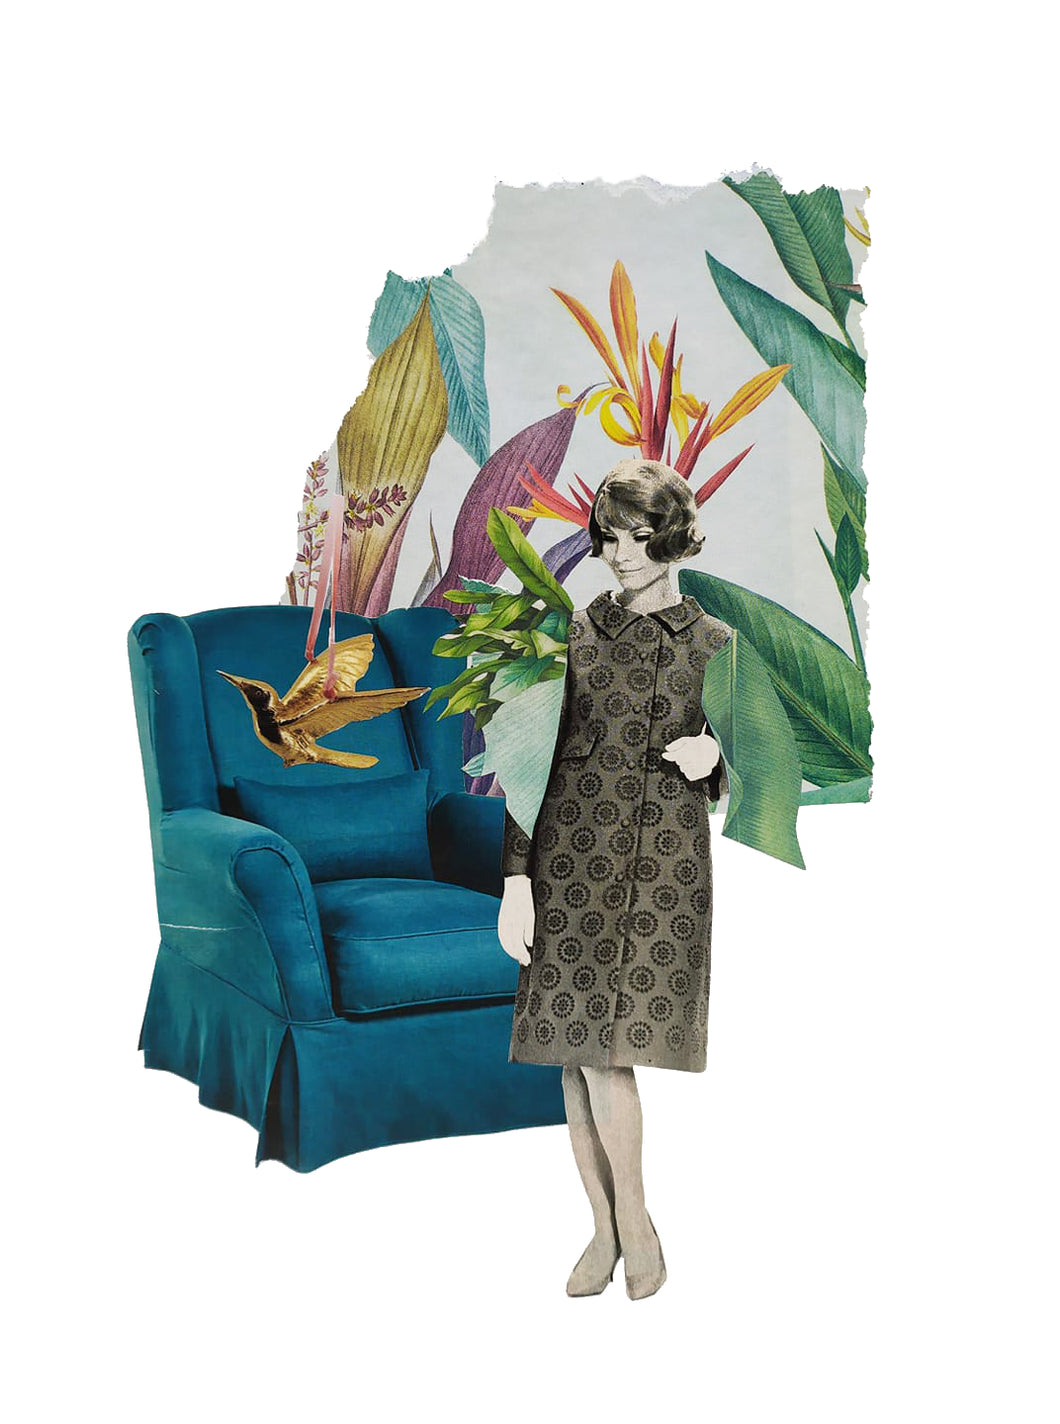 Una mujer en blanco y negro está de pie al lado de una butaca azul de la que sale un pájaro volando. Detrás una decoración vegetal de colores, papel pintado que da profundidad a la escena.